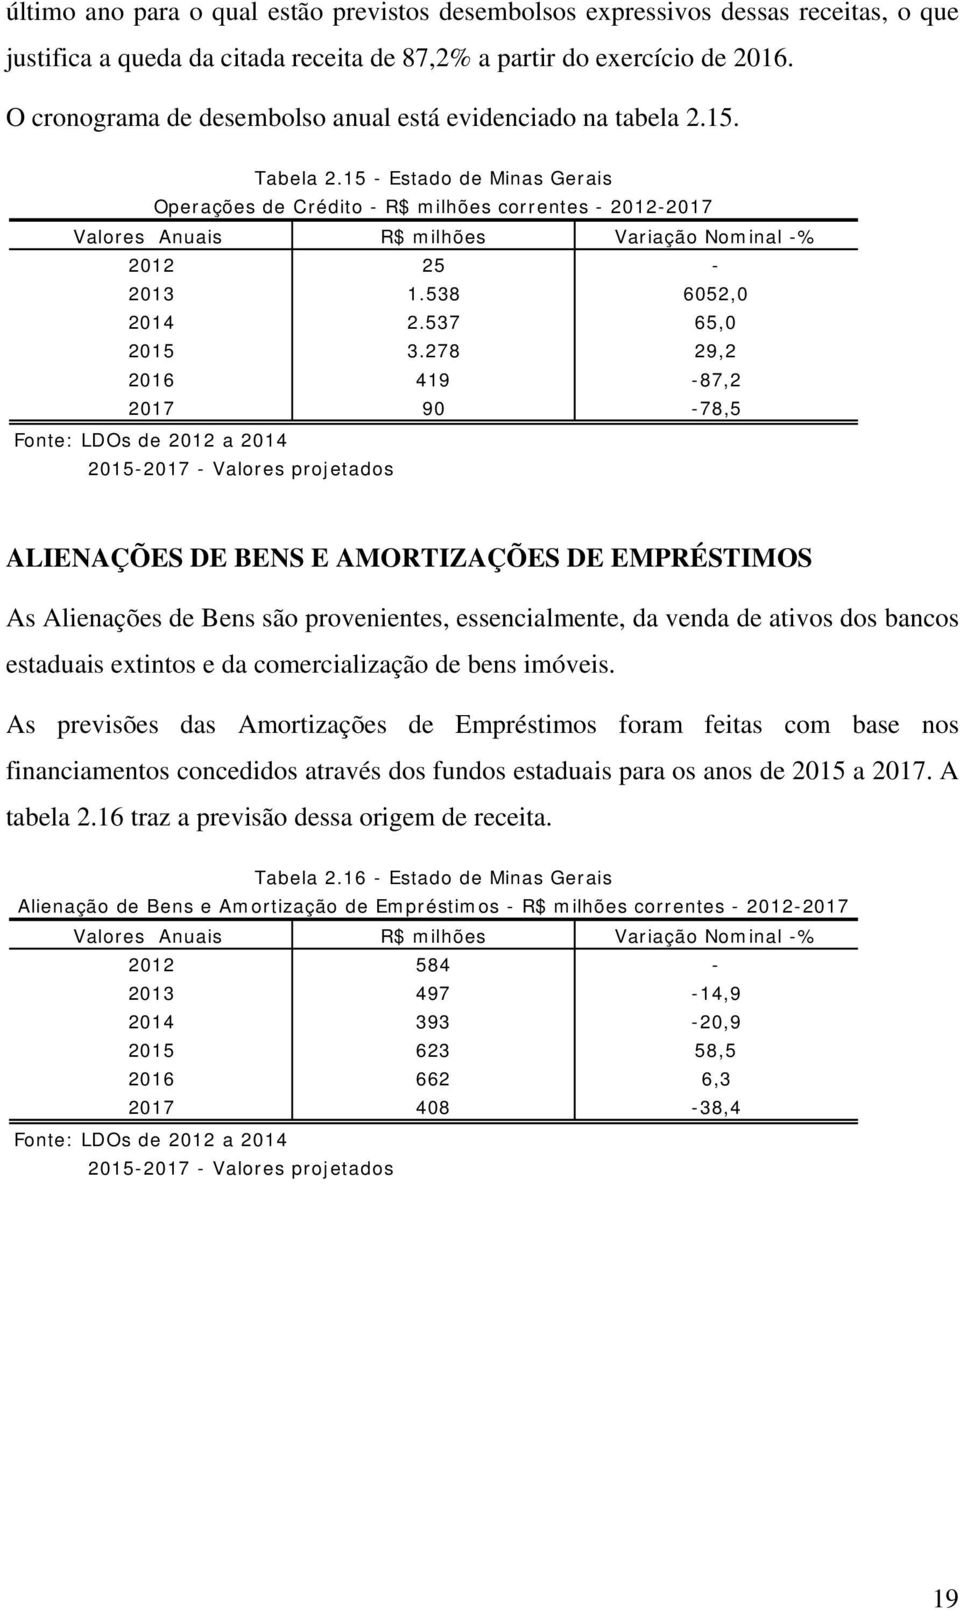 15 - Estado de Minas Gerais Operações de Crédito - R$ milhões correntes - 2012-2017 Valores Anuais R$ milhões Variação Nominal -% 2012 25-2013 1.538 6052,0 2014 2.537 65,0 2015 3.